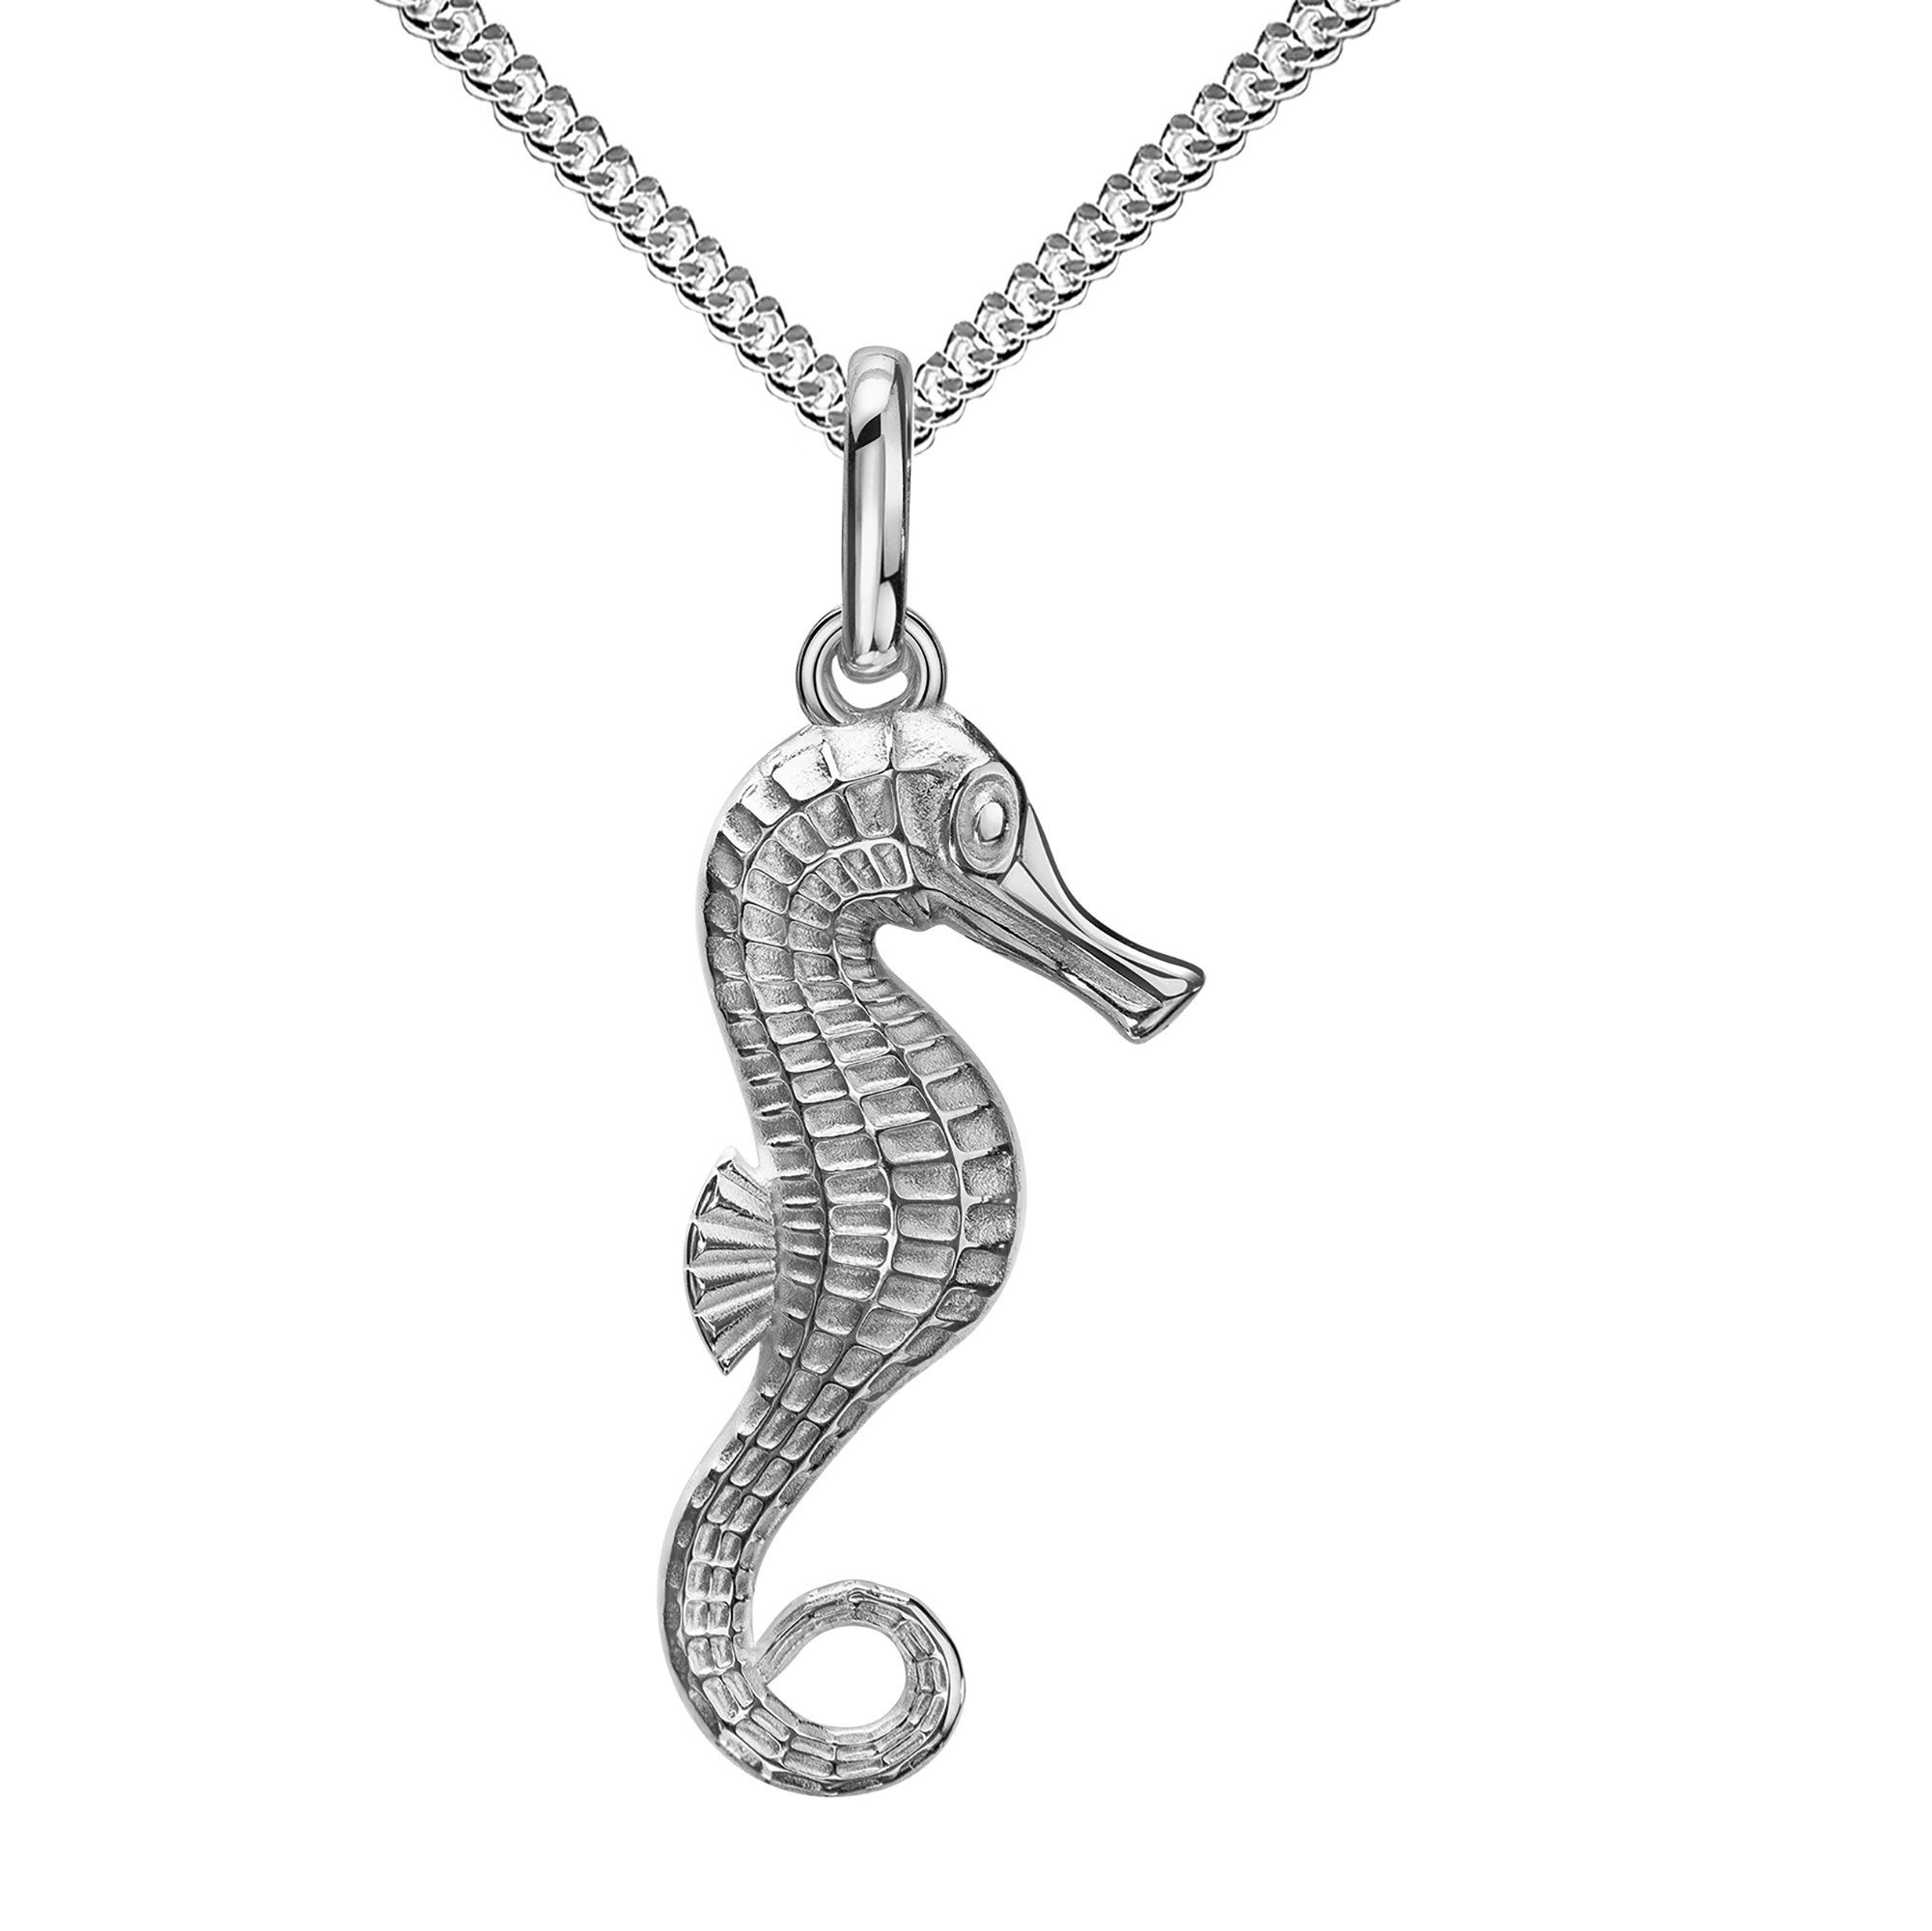 JEVELION Kette mit Anhänger Seepferdchen Anhänger Silber (Silberanhänger, für Damen und Kinder), Mit Silberkette 925 - Länge wählbar 36 - 70 cm.